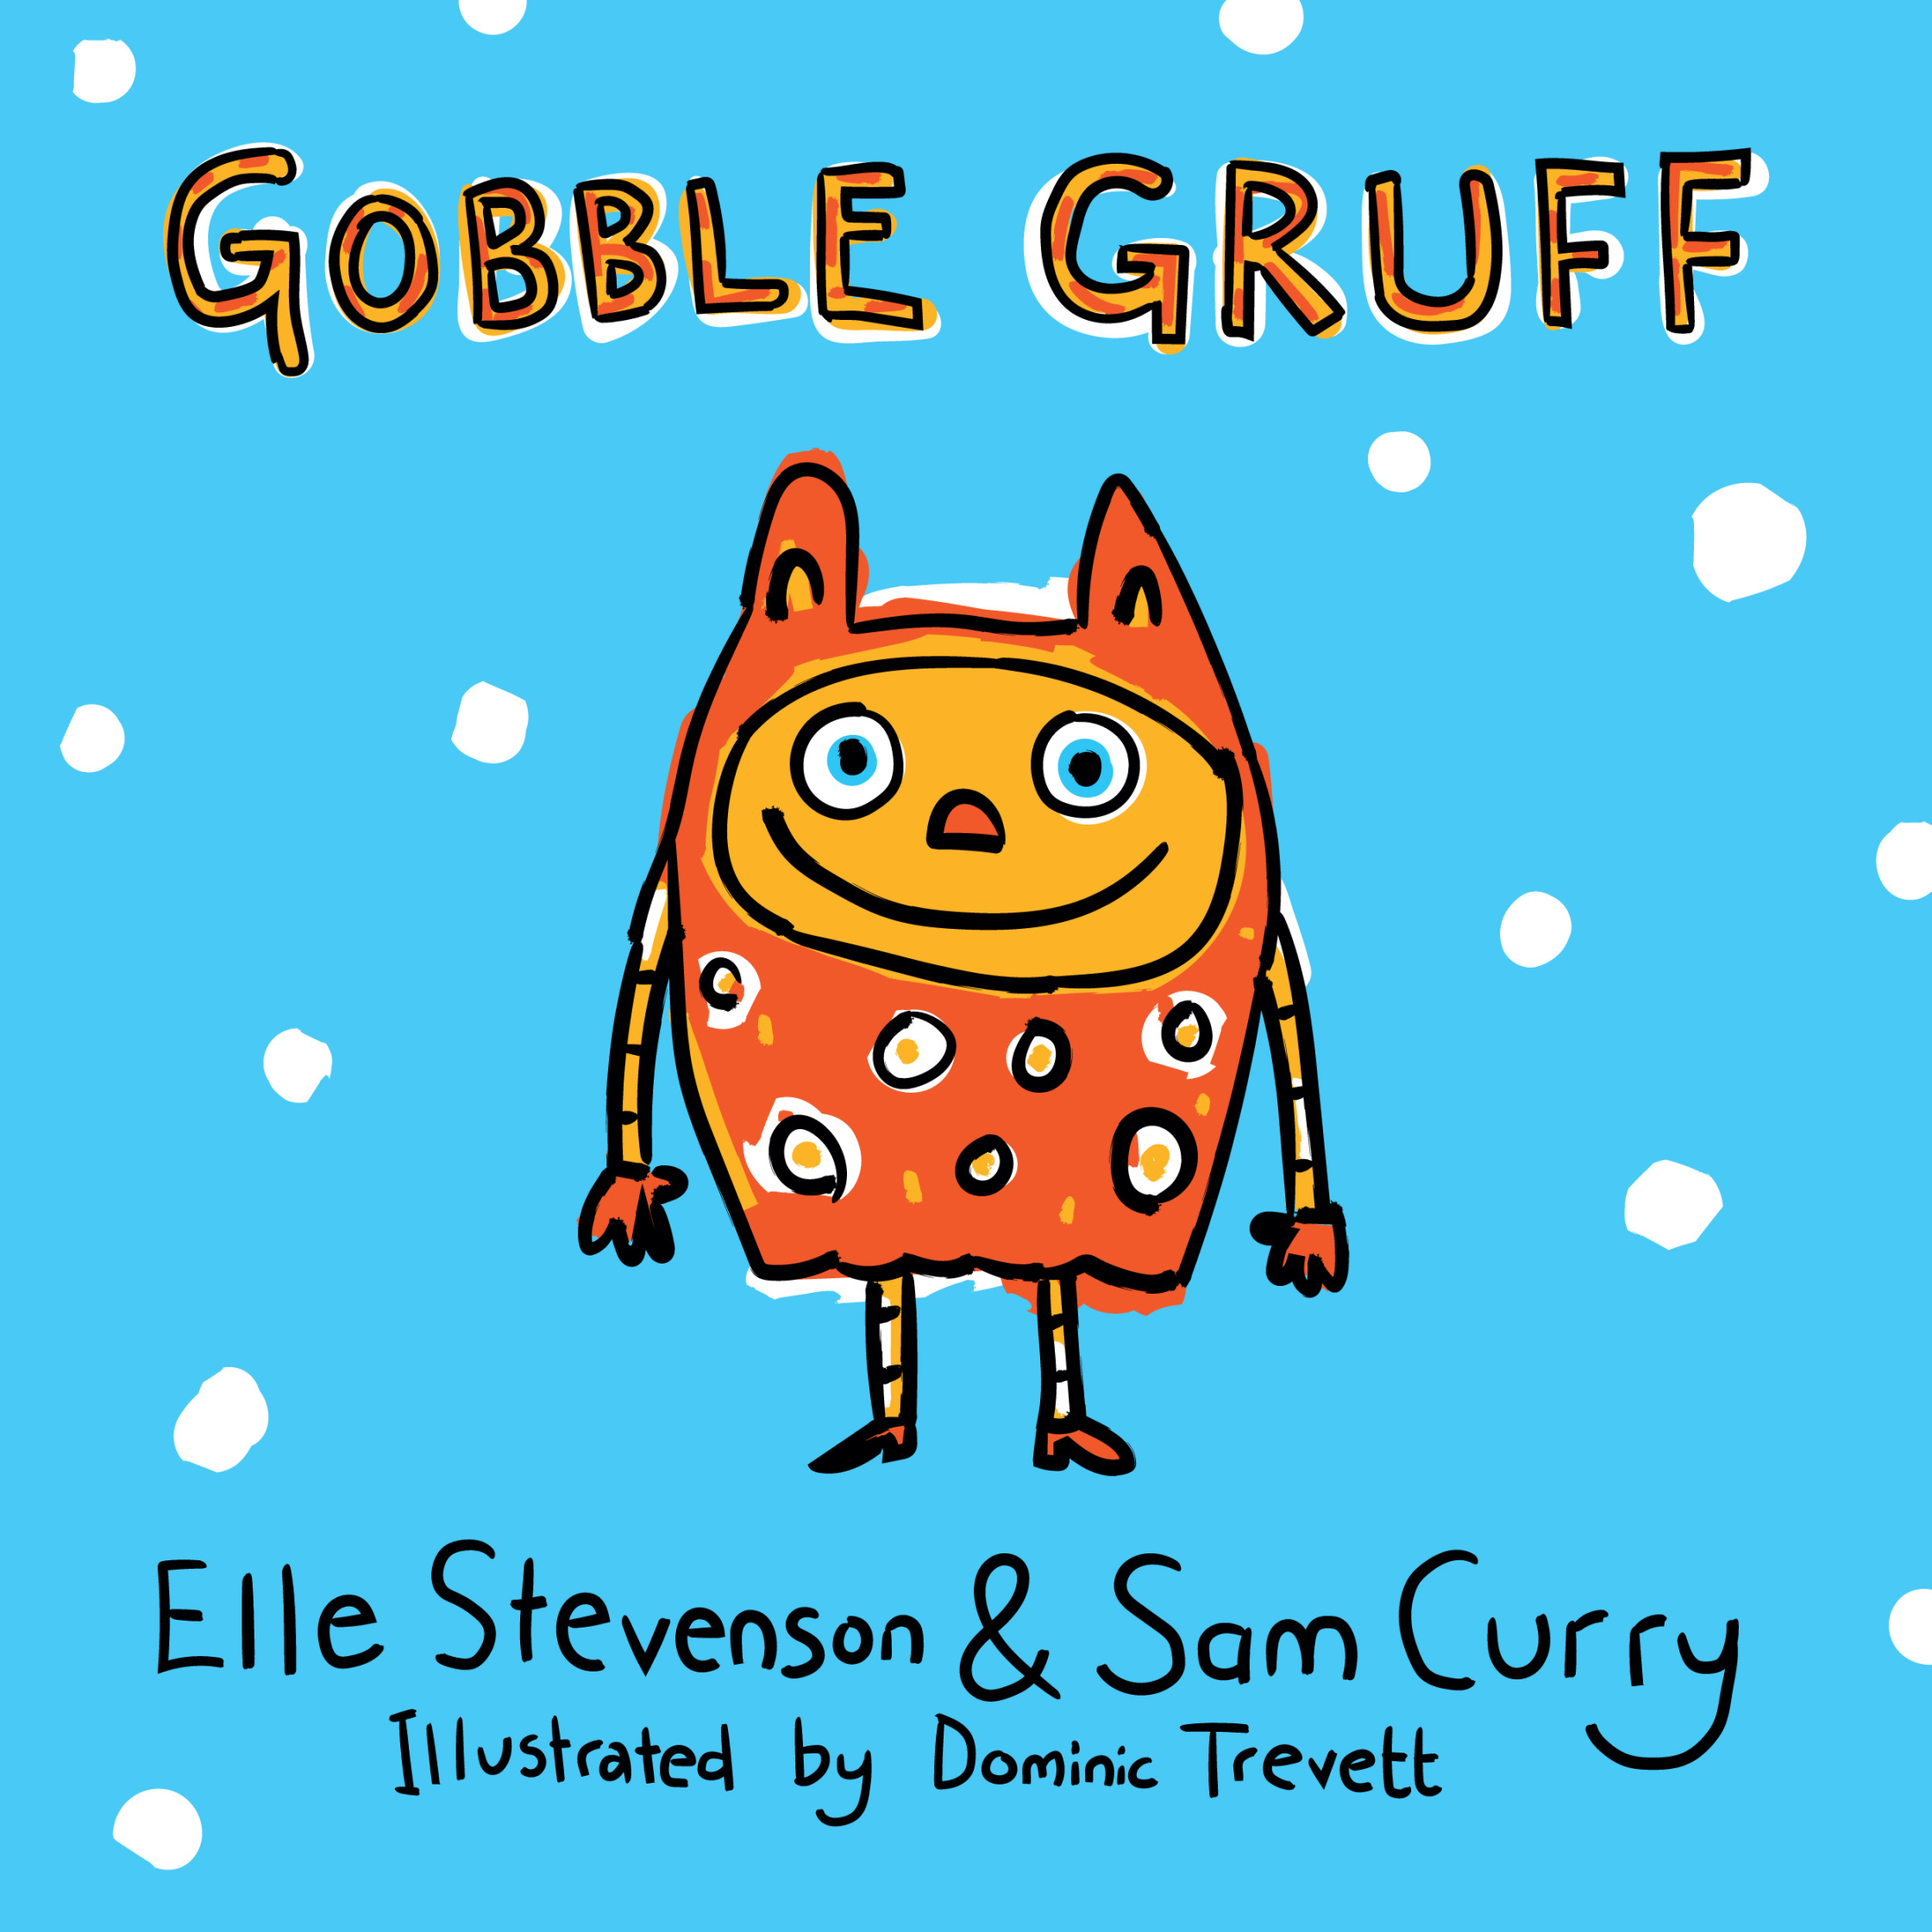 Gobble Gruff Childrens Book Cover.jpg